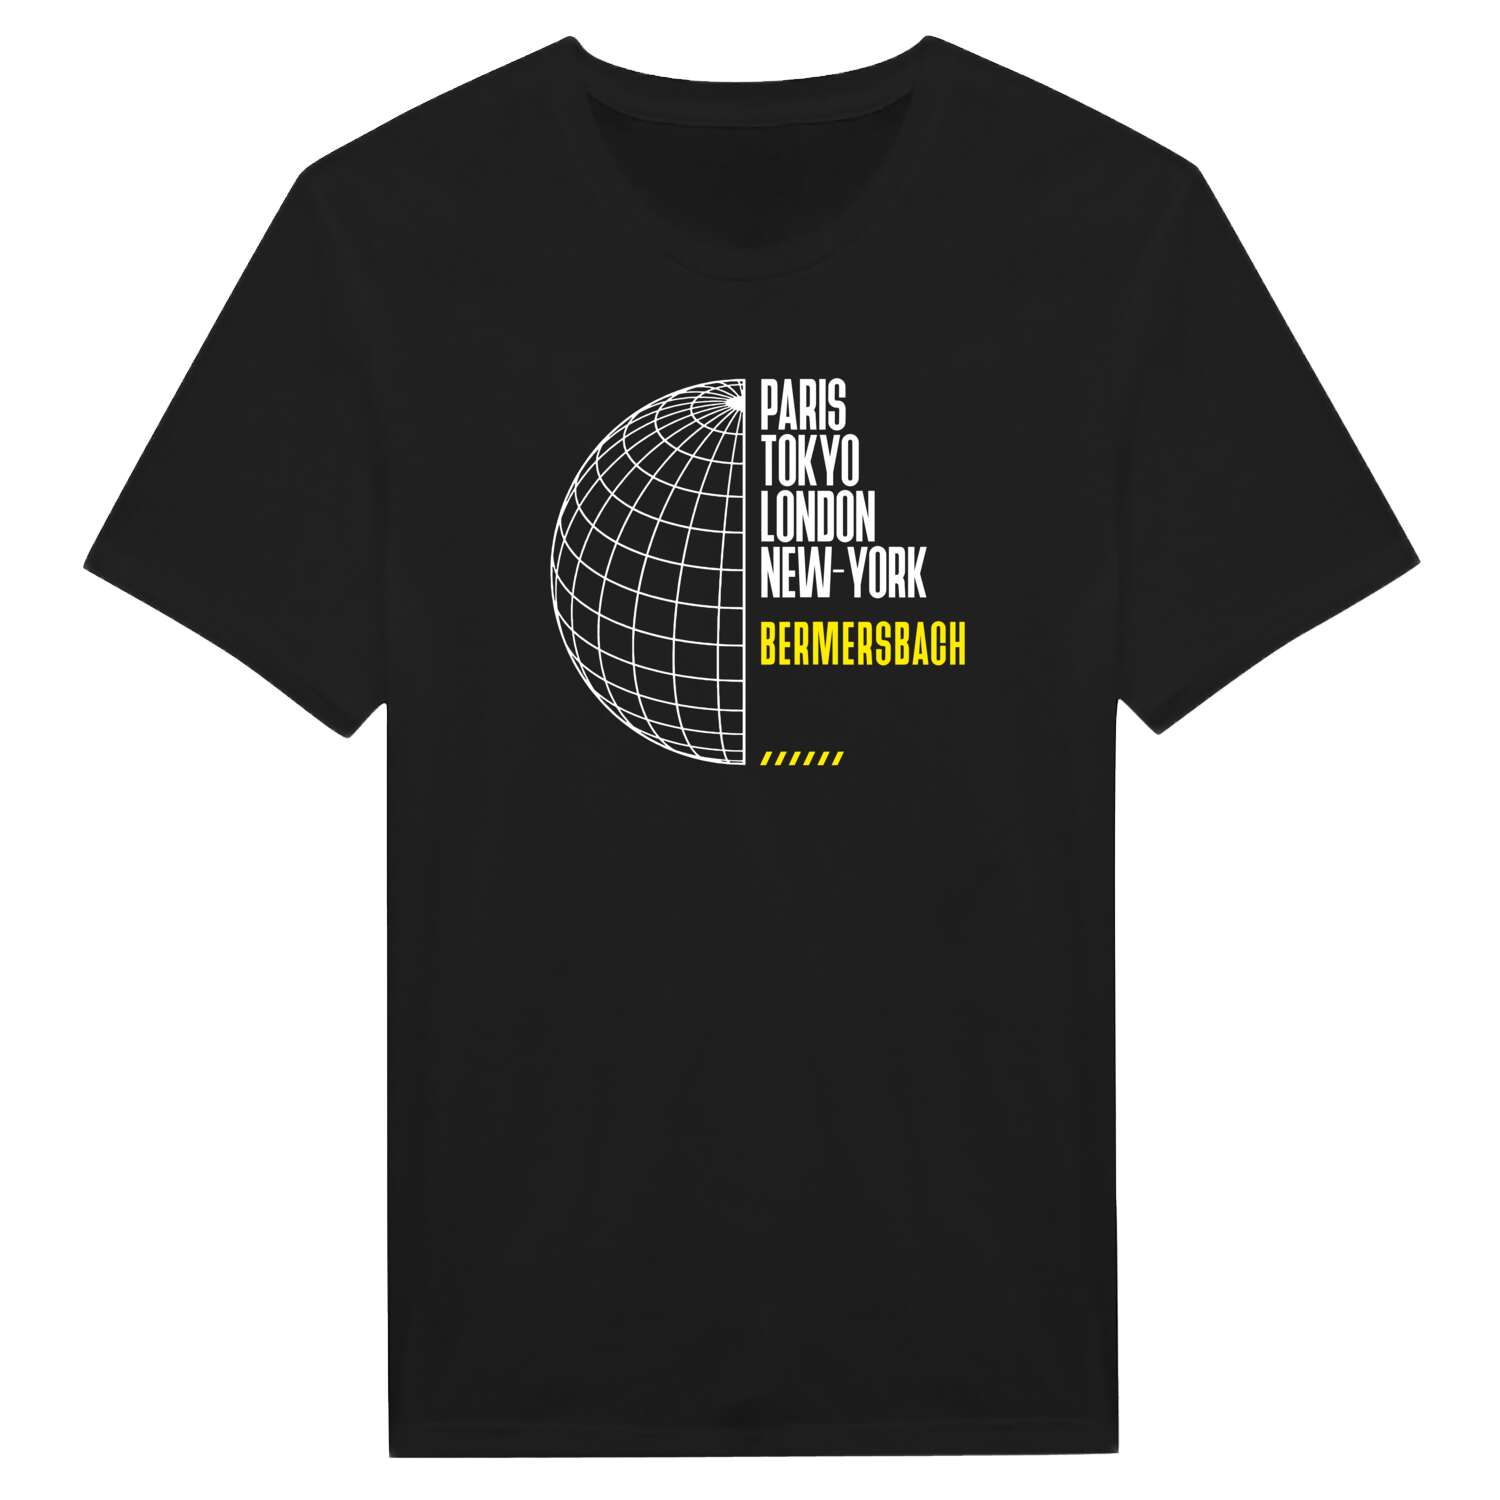 Bermersbach T-Shirt »Paris Tokyo London«